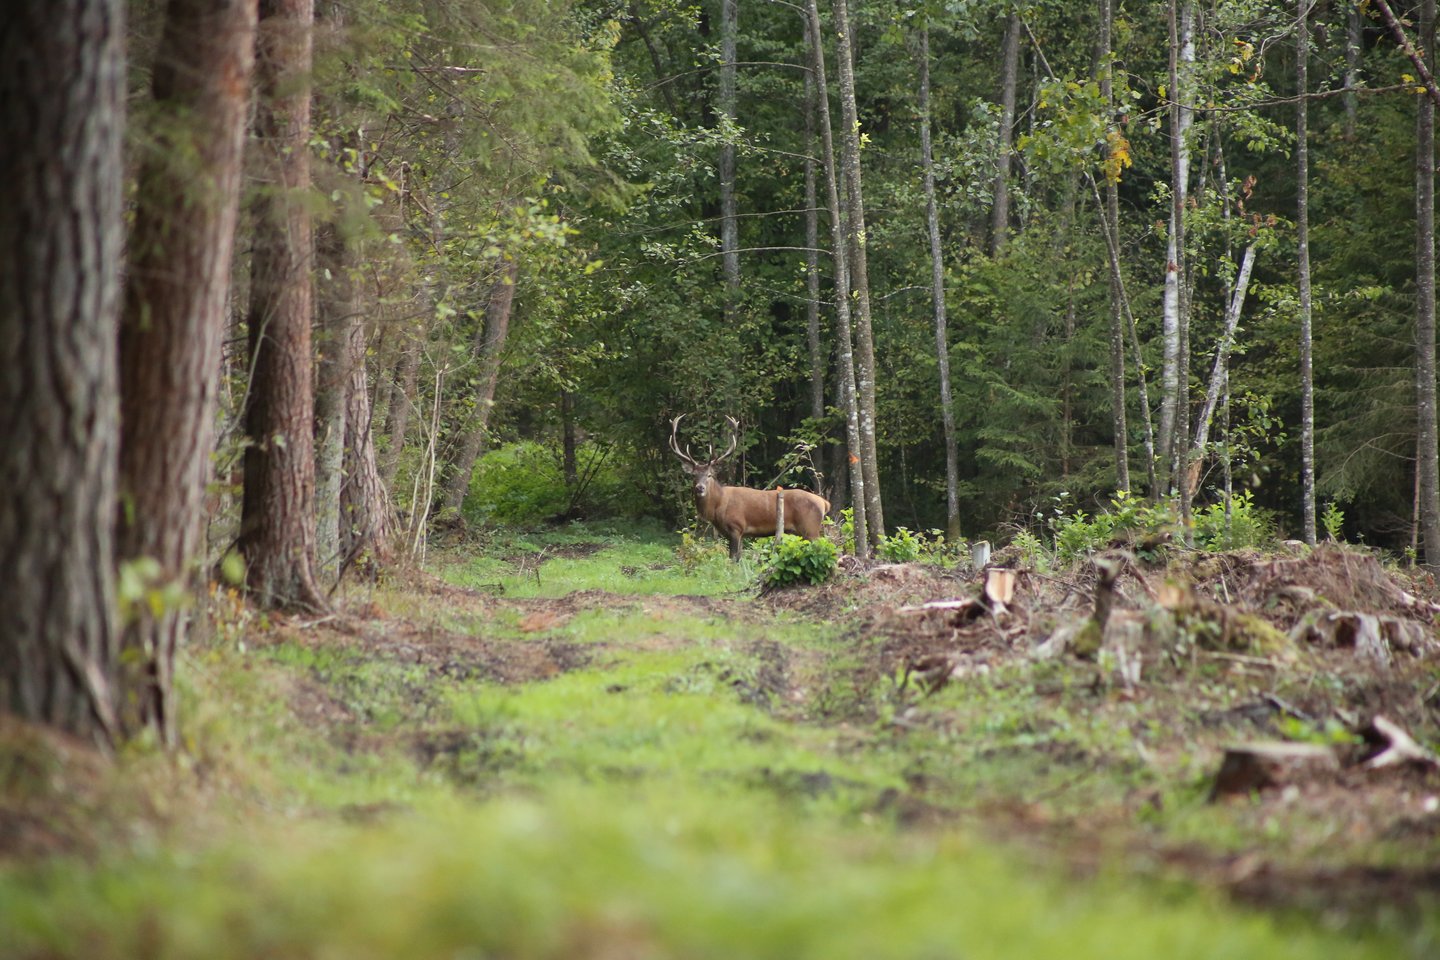  Rugsėjį miškai gaudžia nuo elnių baubimo. <br> Š. Meškio nuotr.